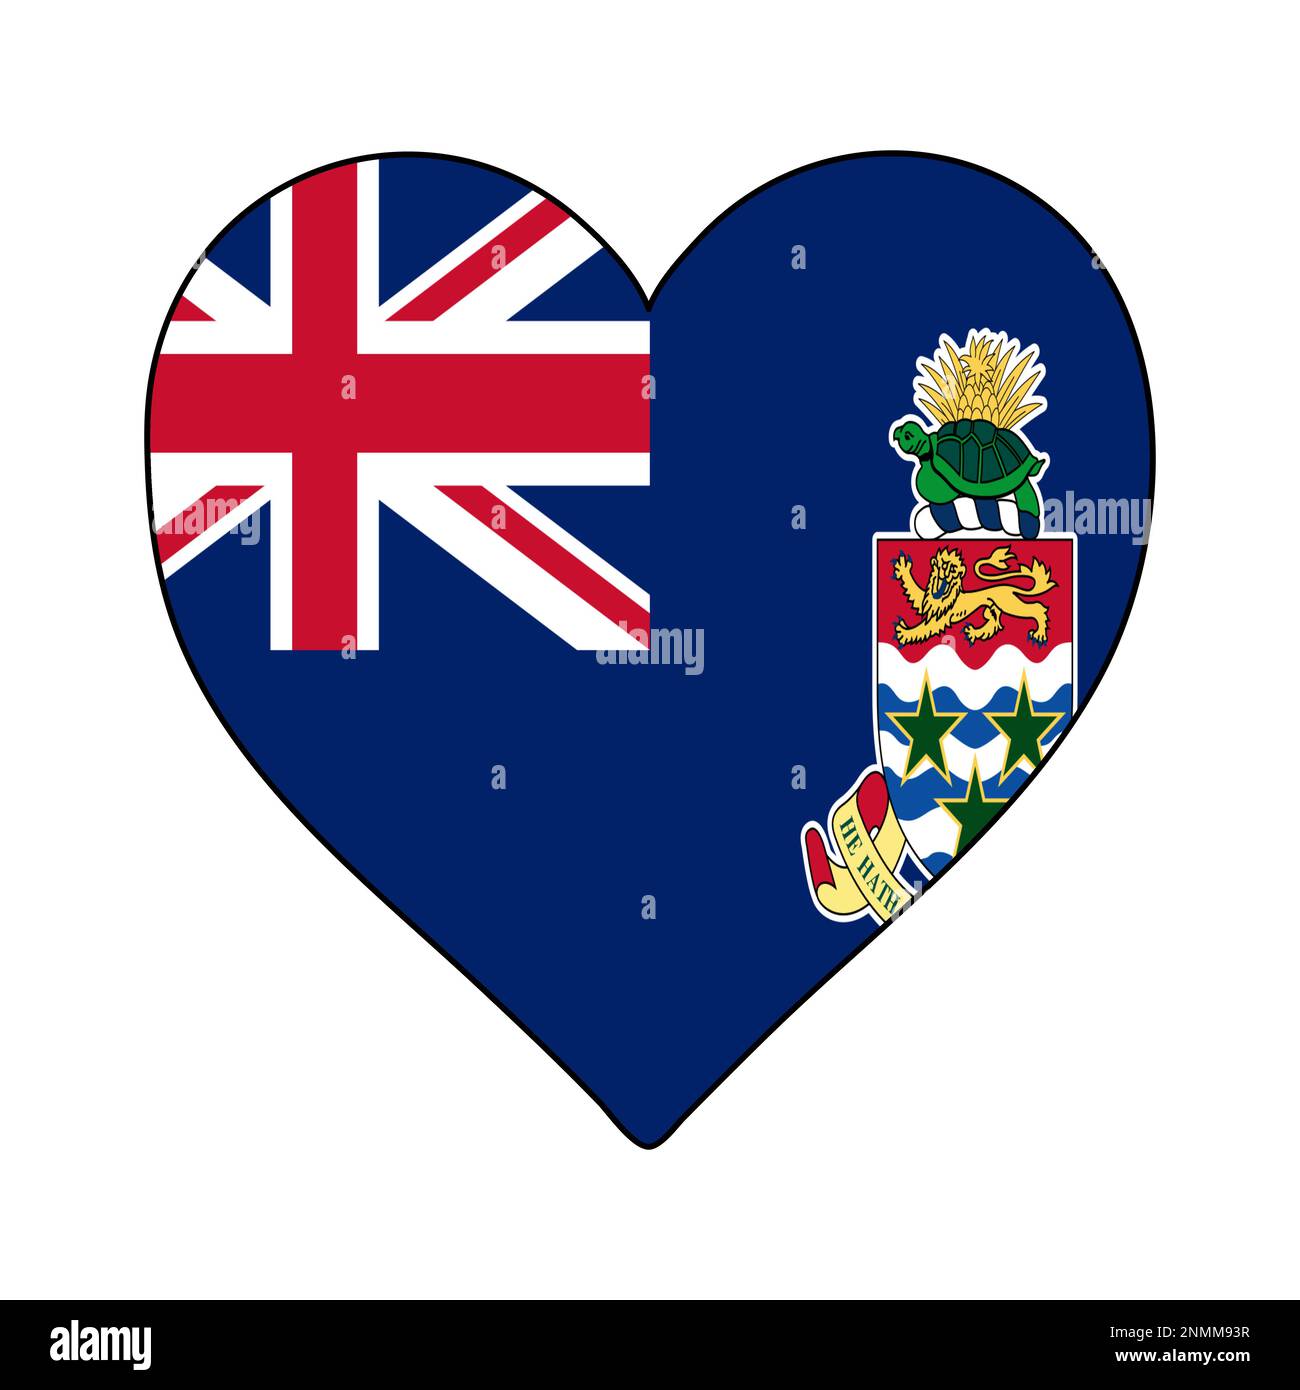 Isole Cayman Heart Shape Flag. Amate le Isole Cayman. Visita le Isole Cayman. Caraibi. America Latina. Disegno grafico dell'illustrazione vettoriale. Illustrazione Vettoriale